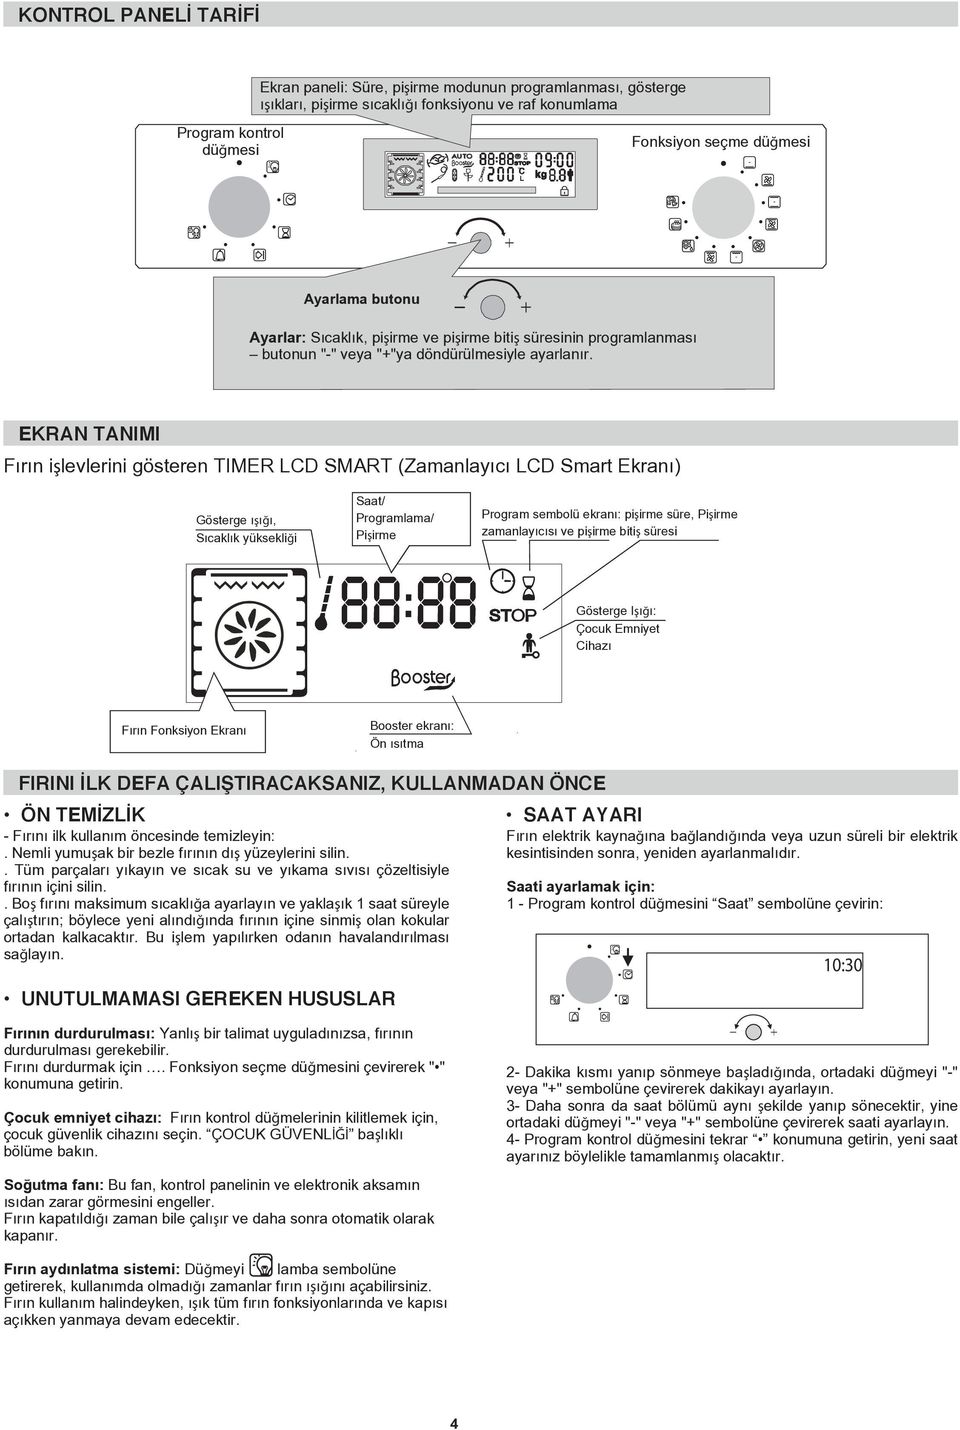 EKRAN TANIMI Fırın işlevlerini gösteren TIMER LCD SMART (Zamanlayıcı LCD Smart Ekranı) Gösterge ışığı, Sıcaklık yüksekliği Saat/ Programlama/ Pişirme Program sembolü ekranı: pişirme süre, Pişirme